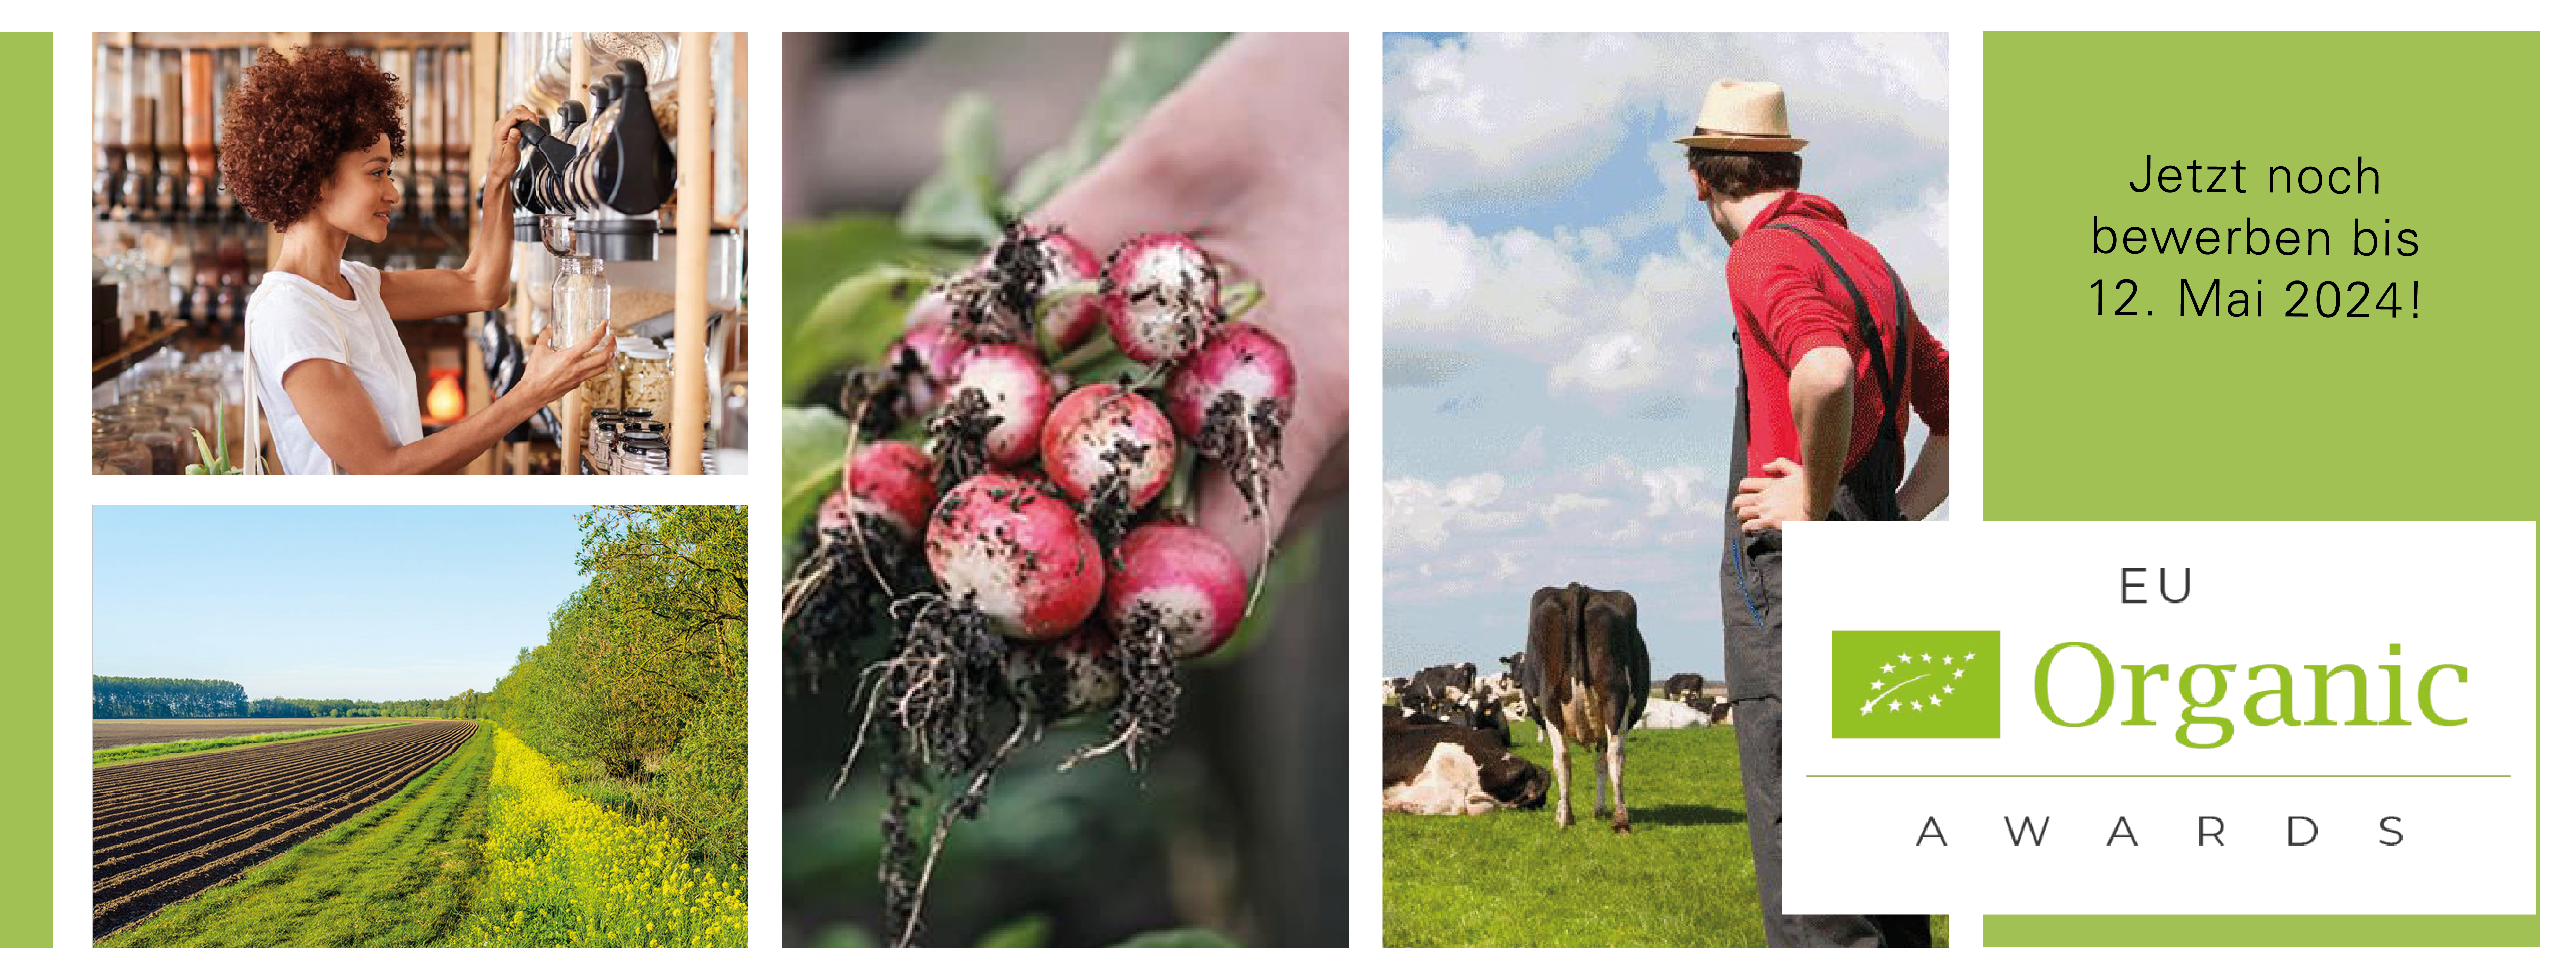 Symbolbild EU Organic Awards - Frau beim Abfüllen von Lebensmitteln, Acker und Hecke, Bund Radieschen, Landwirt auf und Kühe auf Weide, Logo Award